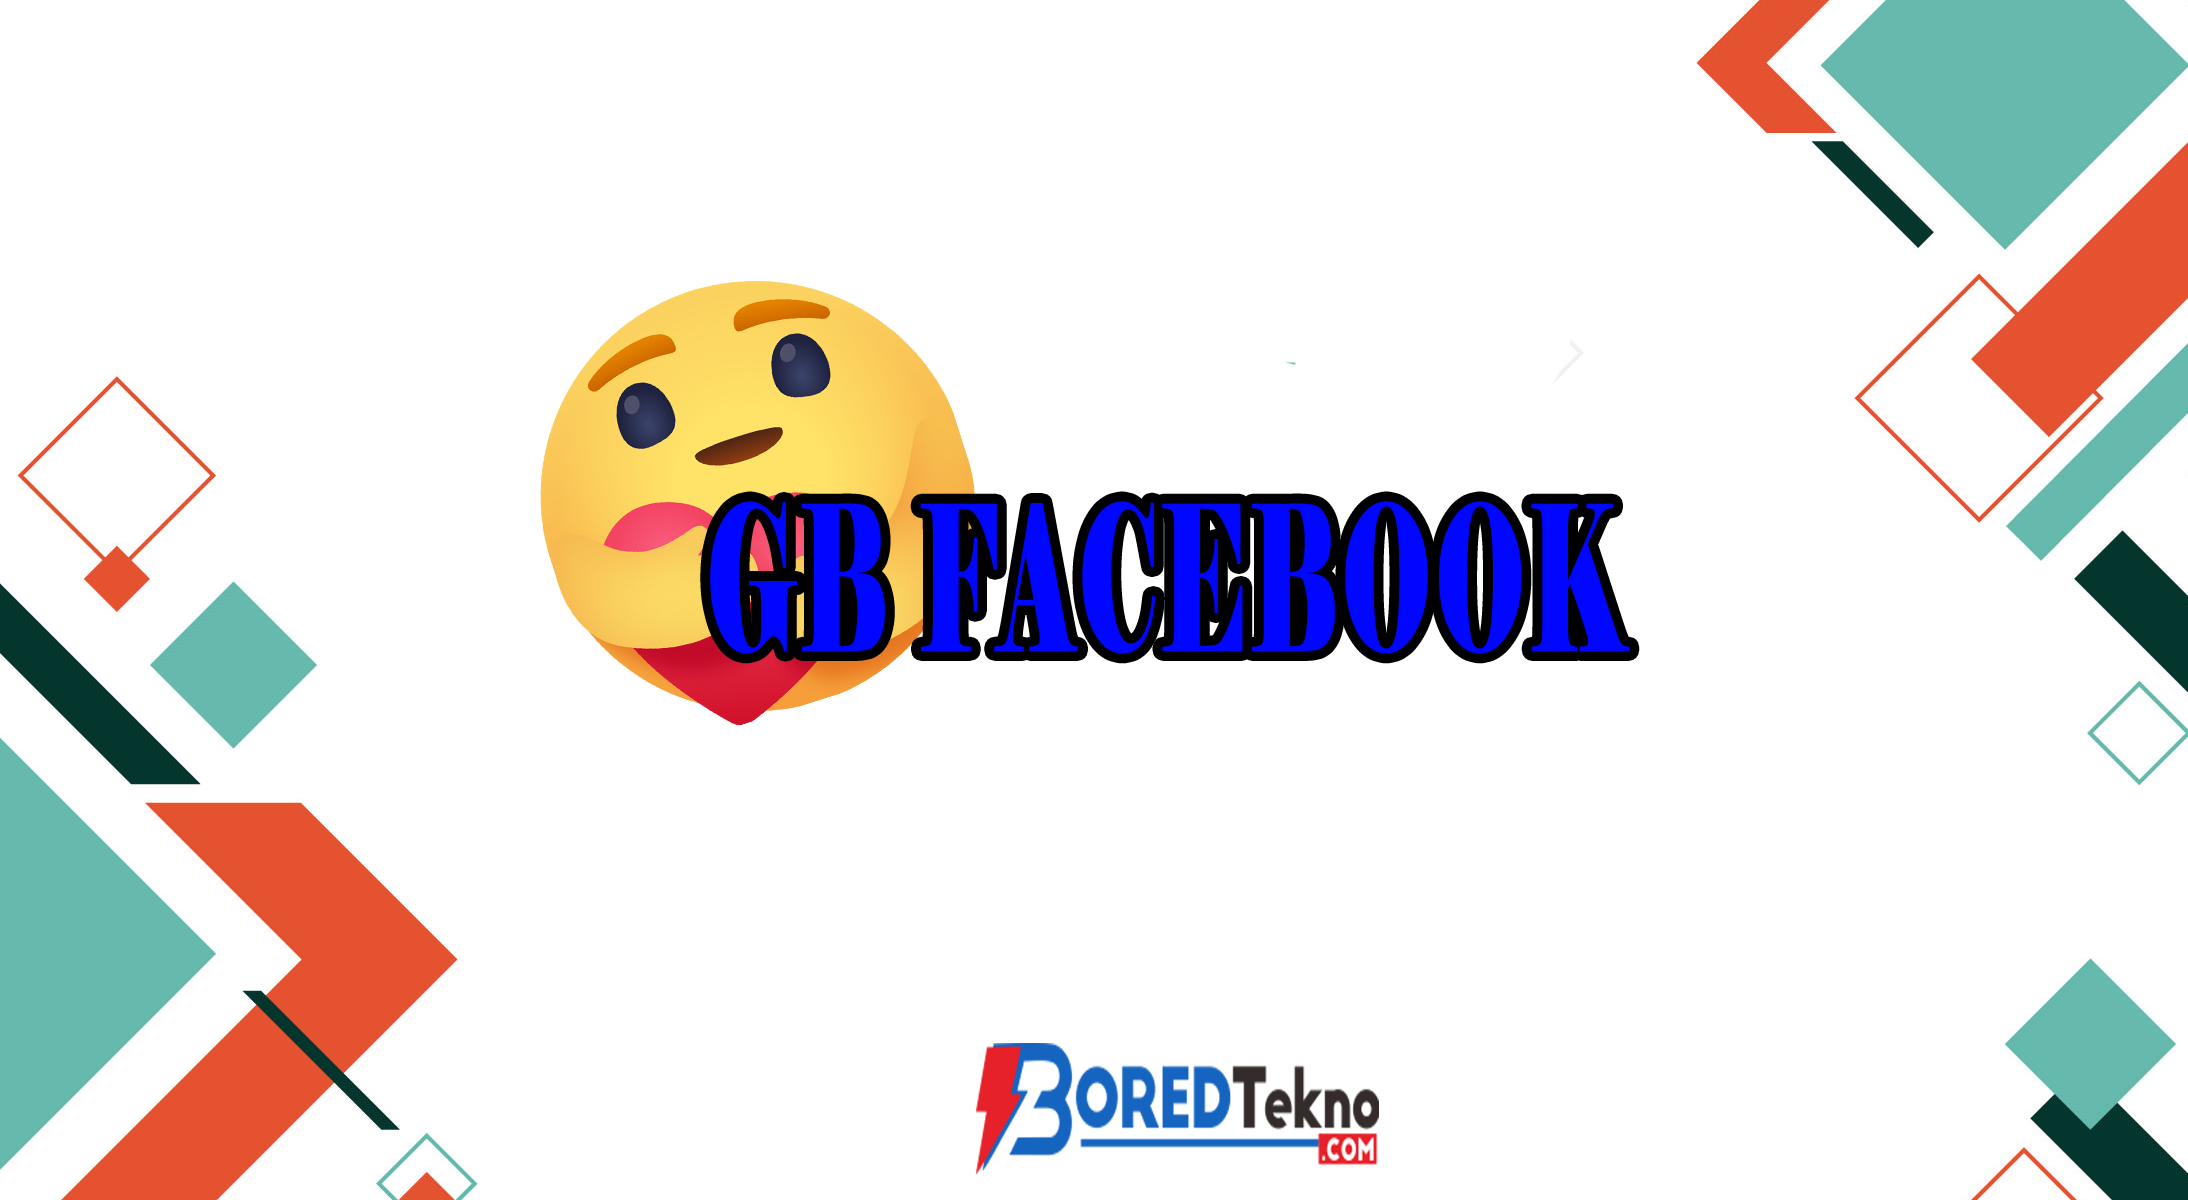 GB Facebook